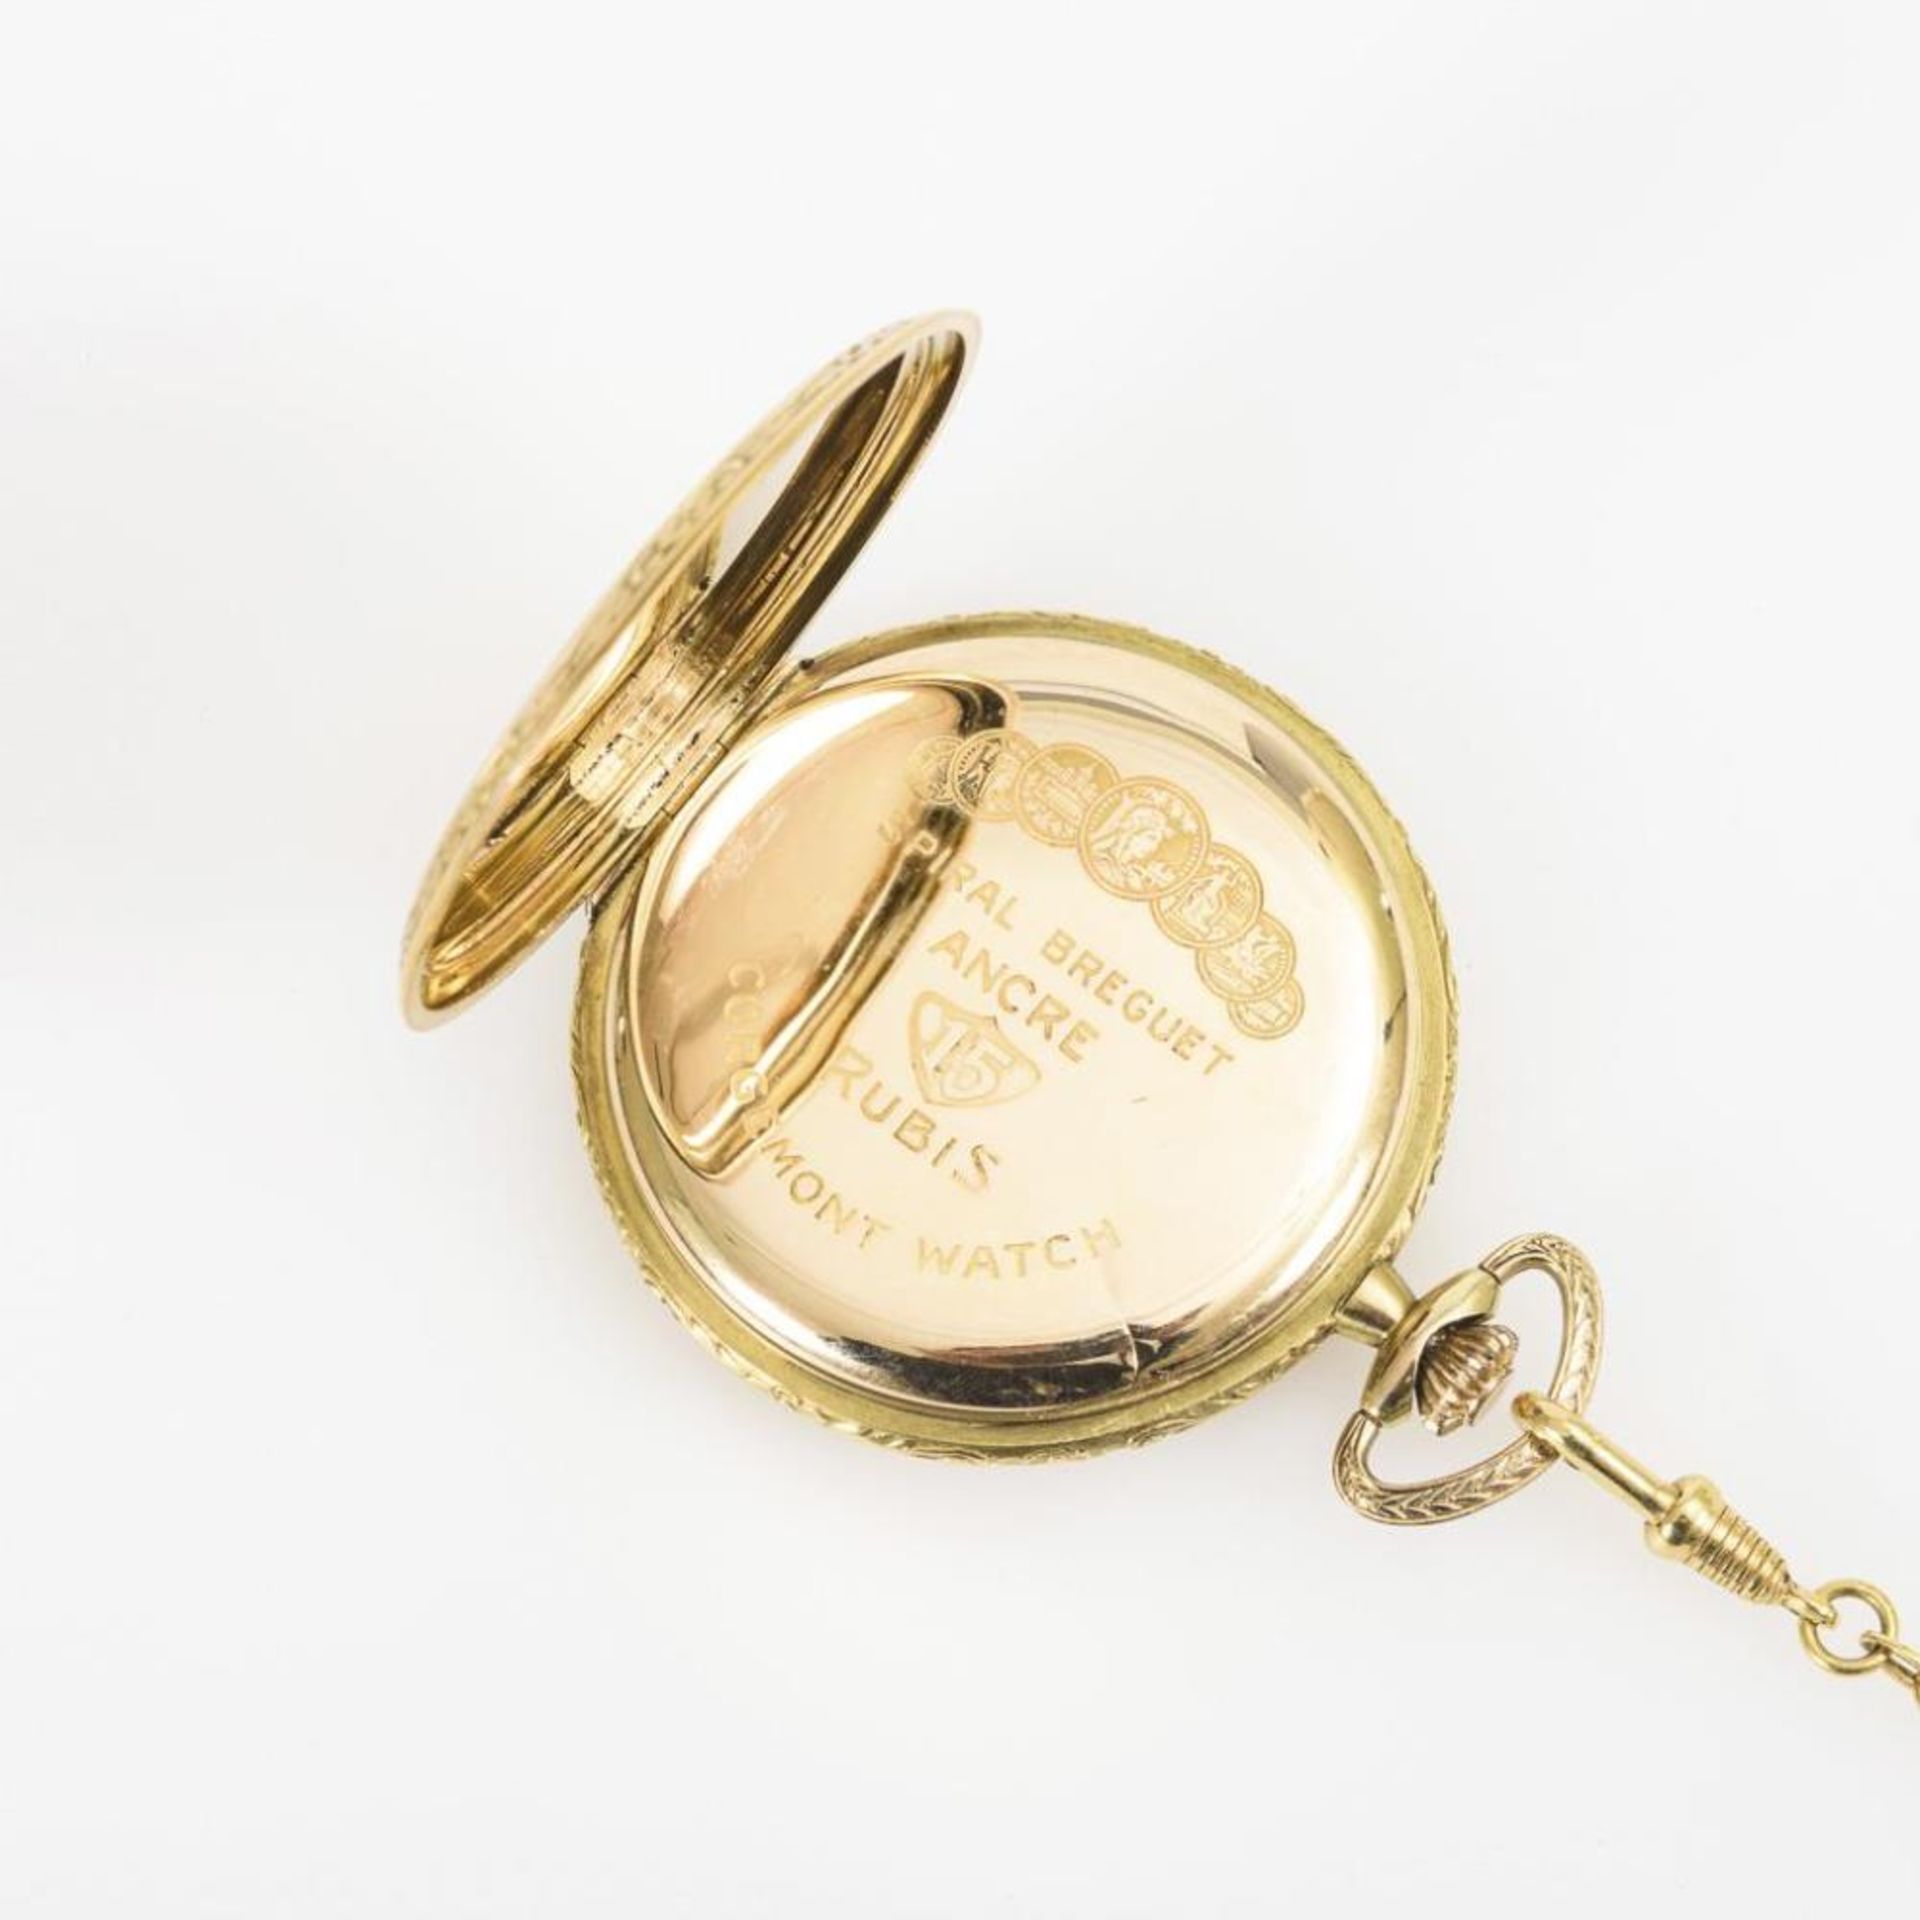 Goldene Savonnette an vergoldeter Uhrenkette. Chronomètre Corgémont Watch. - Bild 5 aus 5